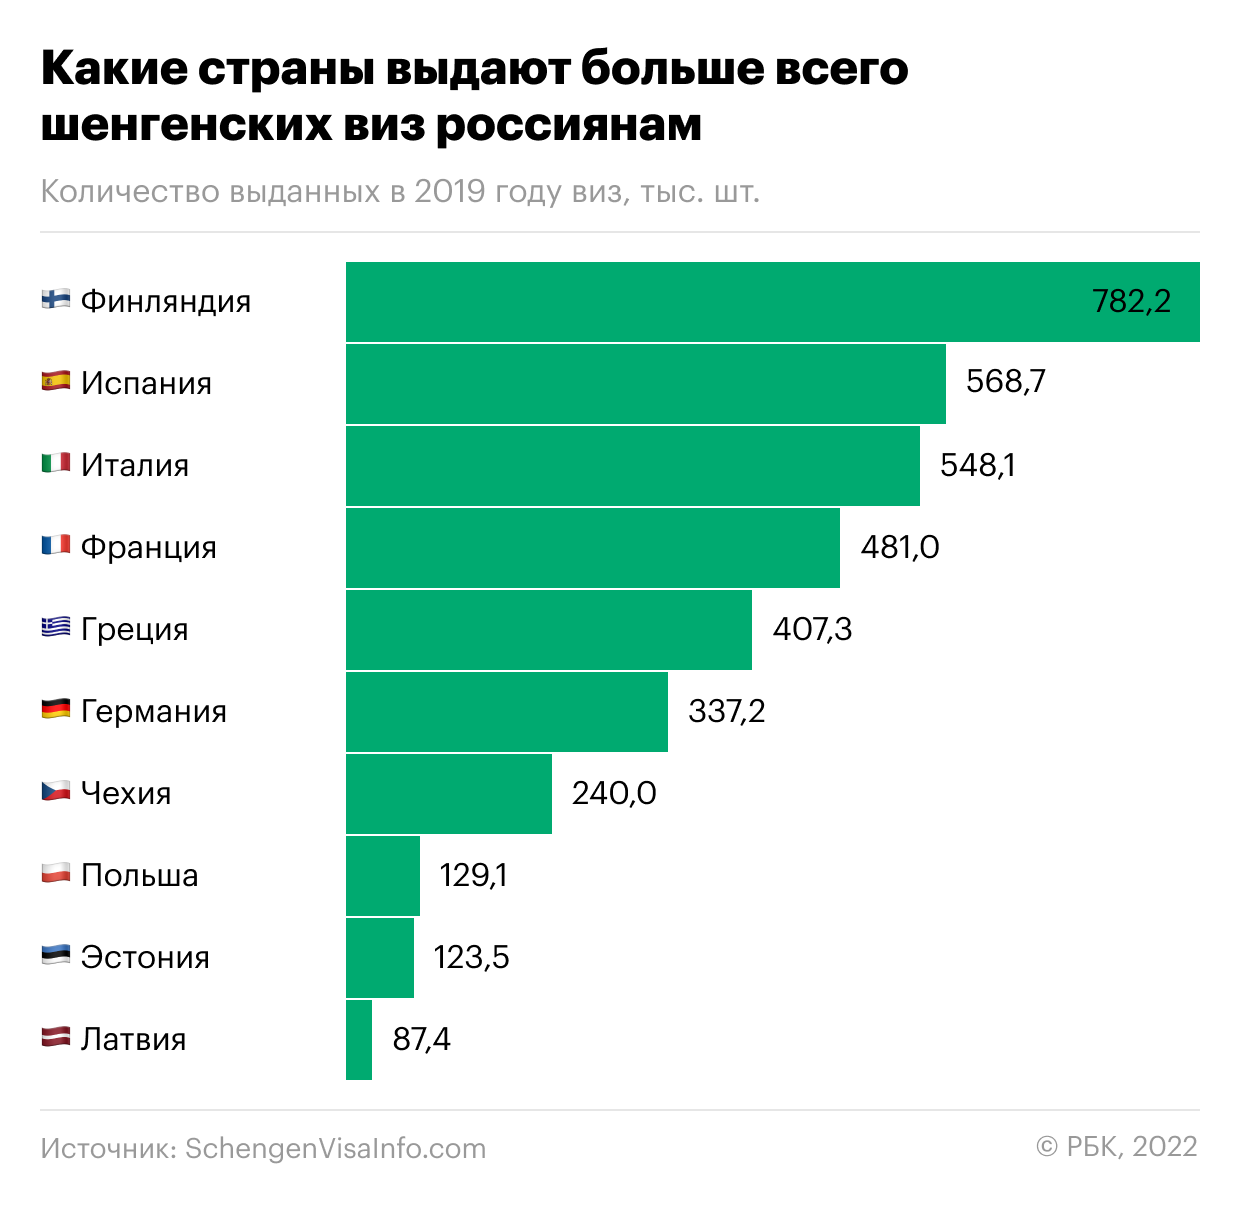 Какие страны Европы выдавали больше всего виз россиянам. Инфографика